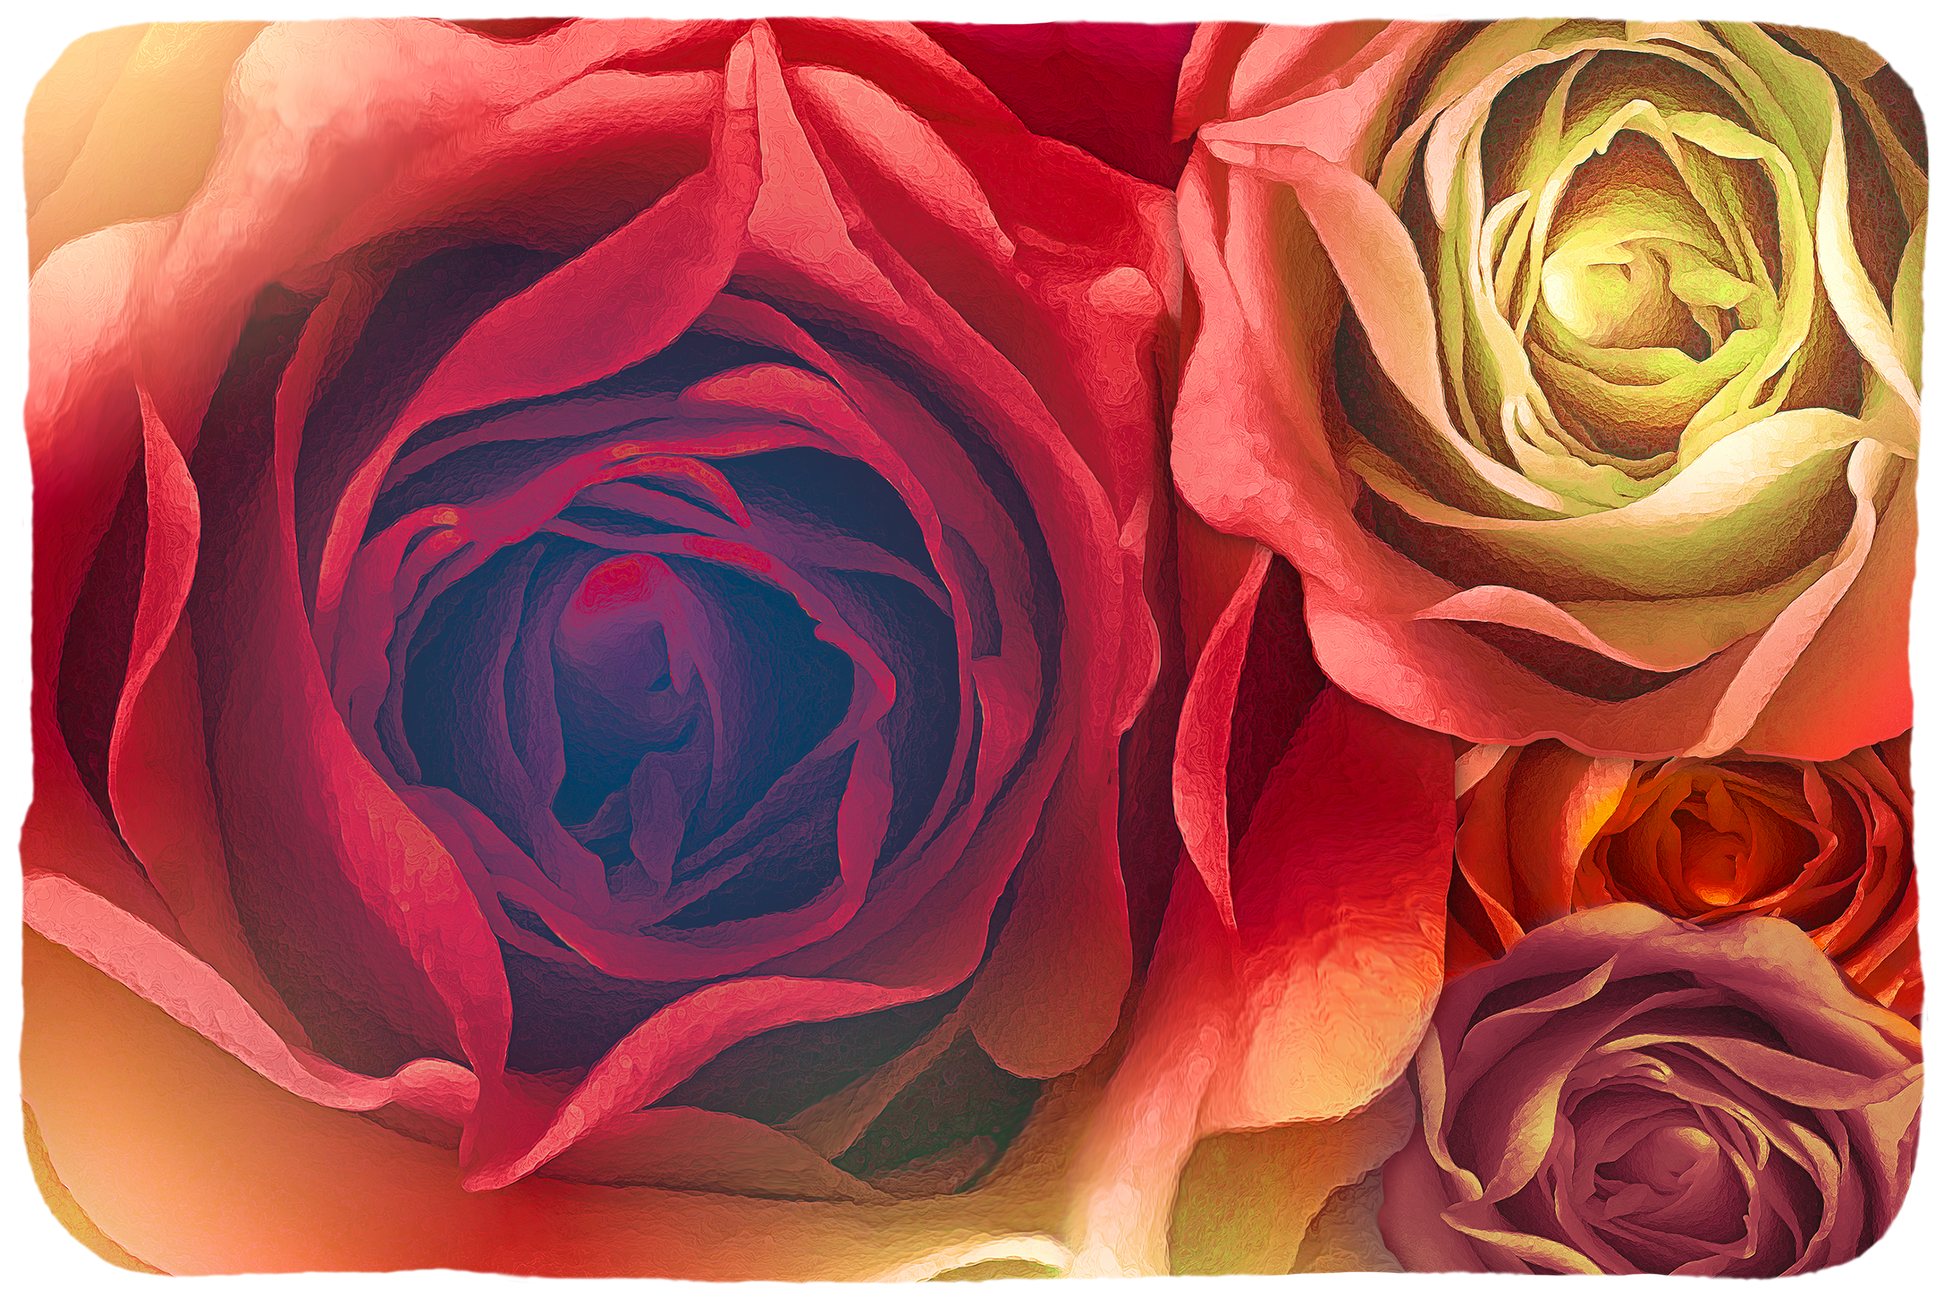 Rainbow rose Deken, teddy fleece, 100cm x 150cm